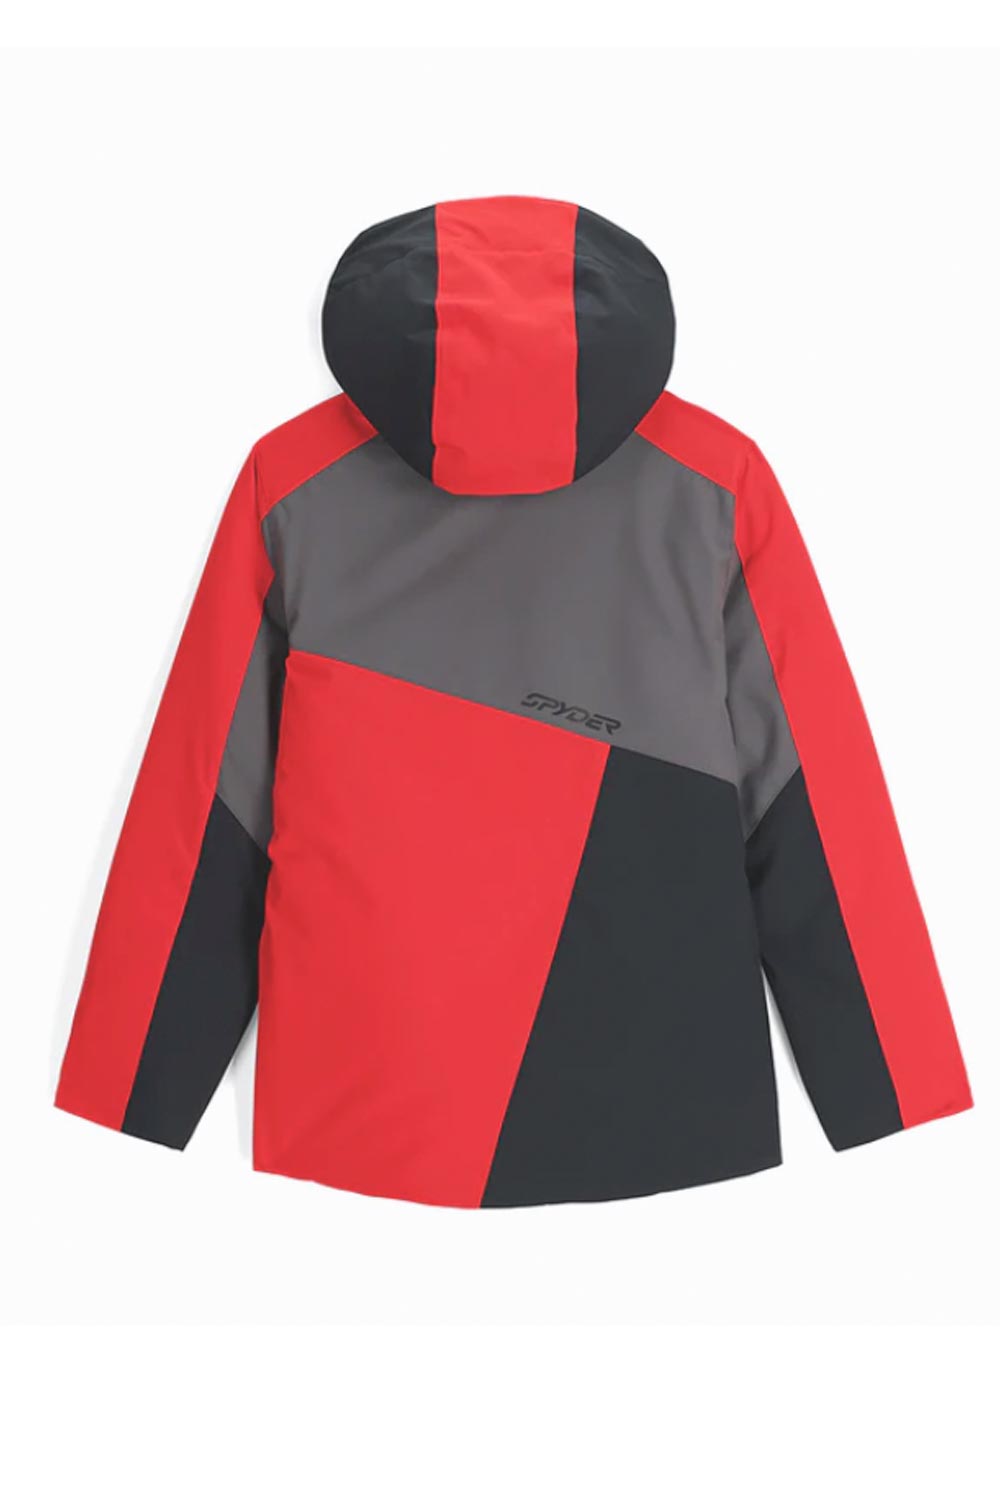 boys' Spyder Ambush ski jacket, red gray and black